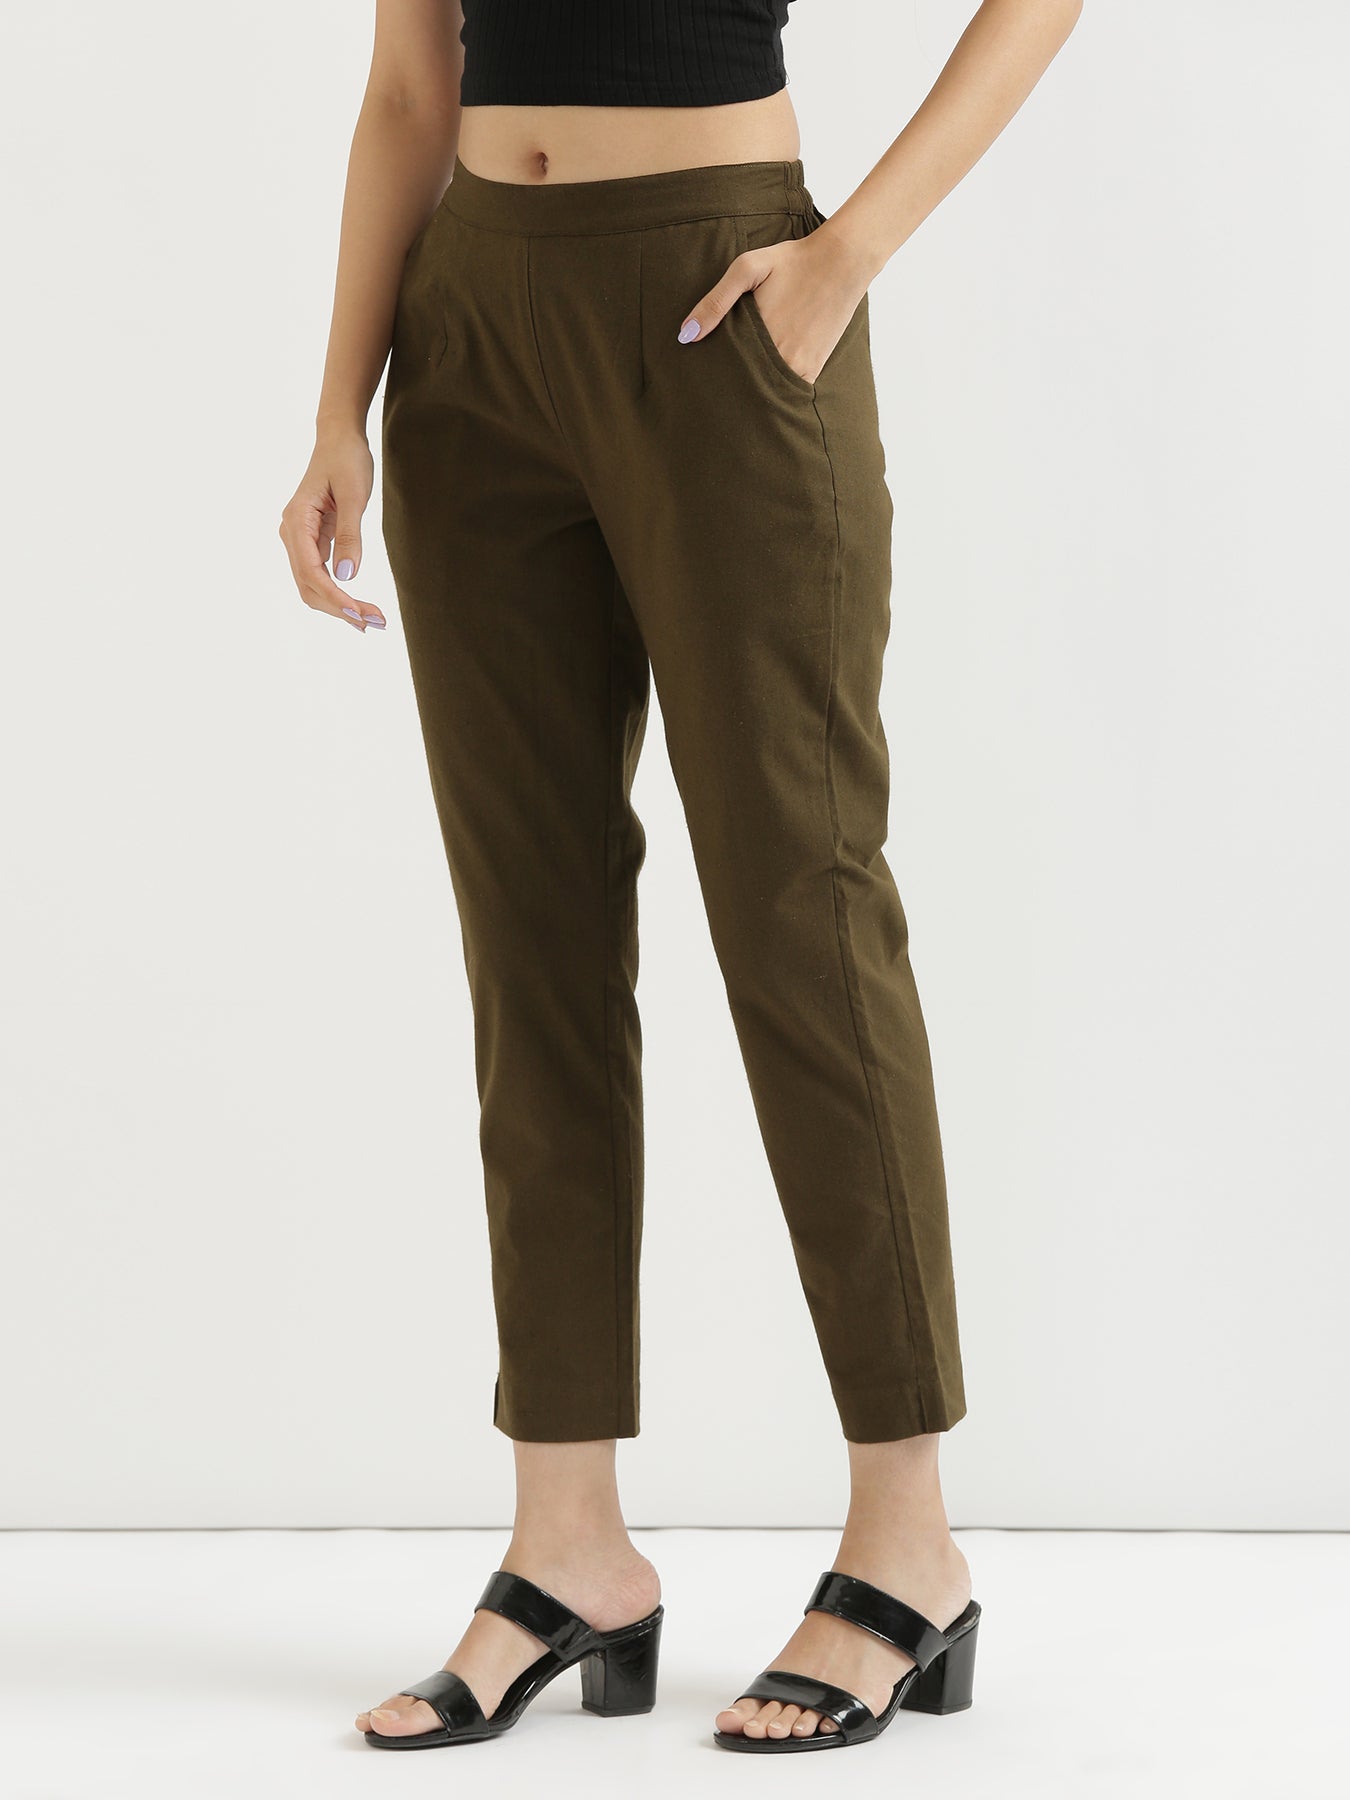 Skinny Fit Cargo Pants - Dark khaki green - Men | H&M US